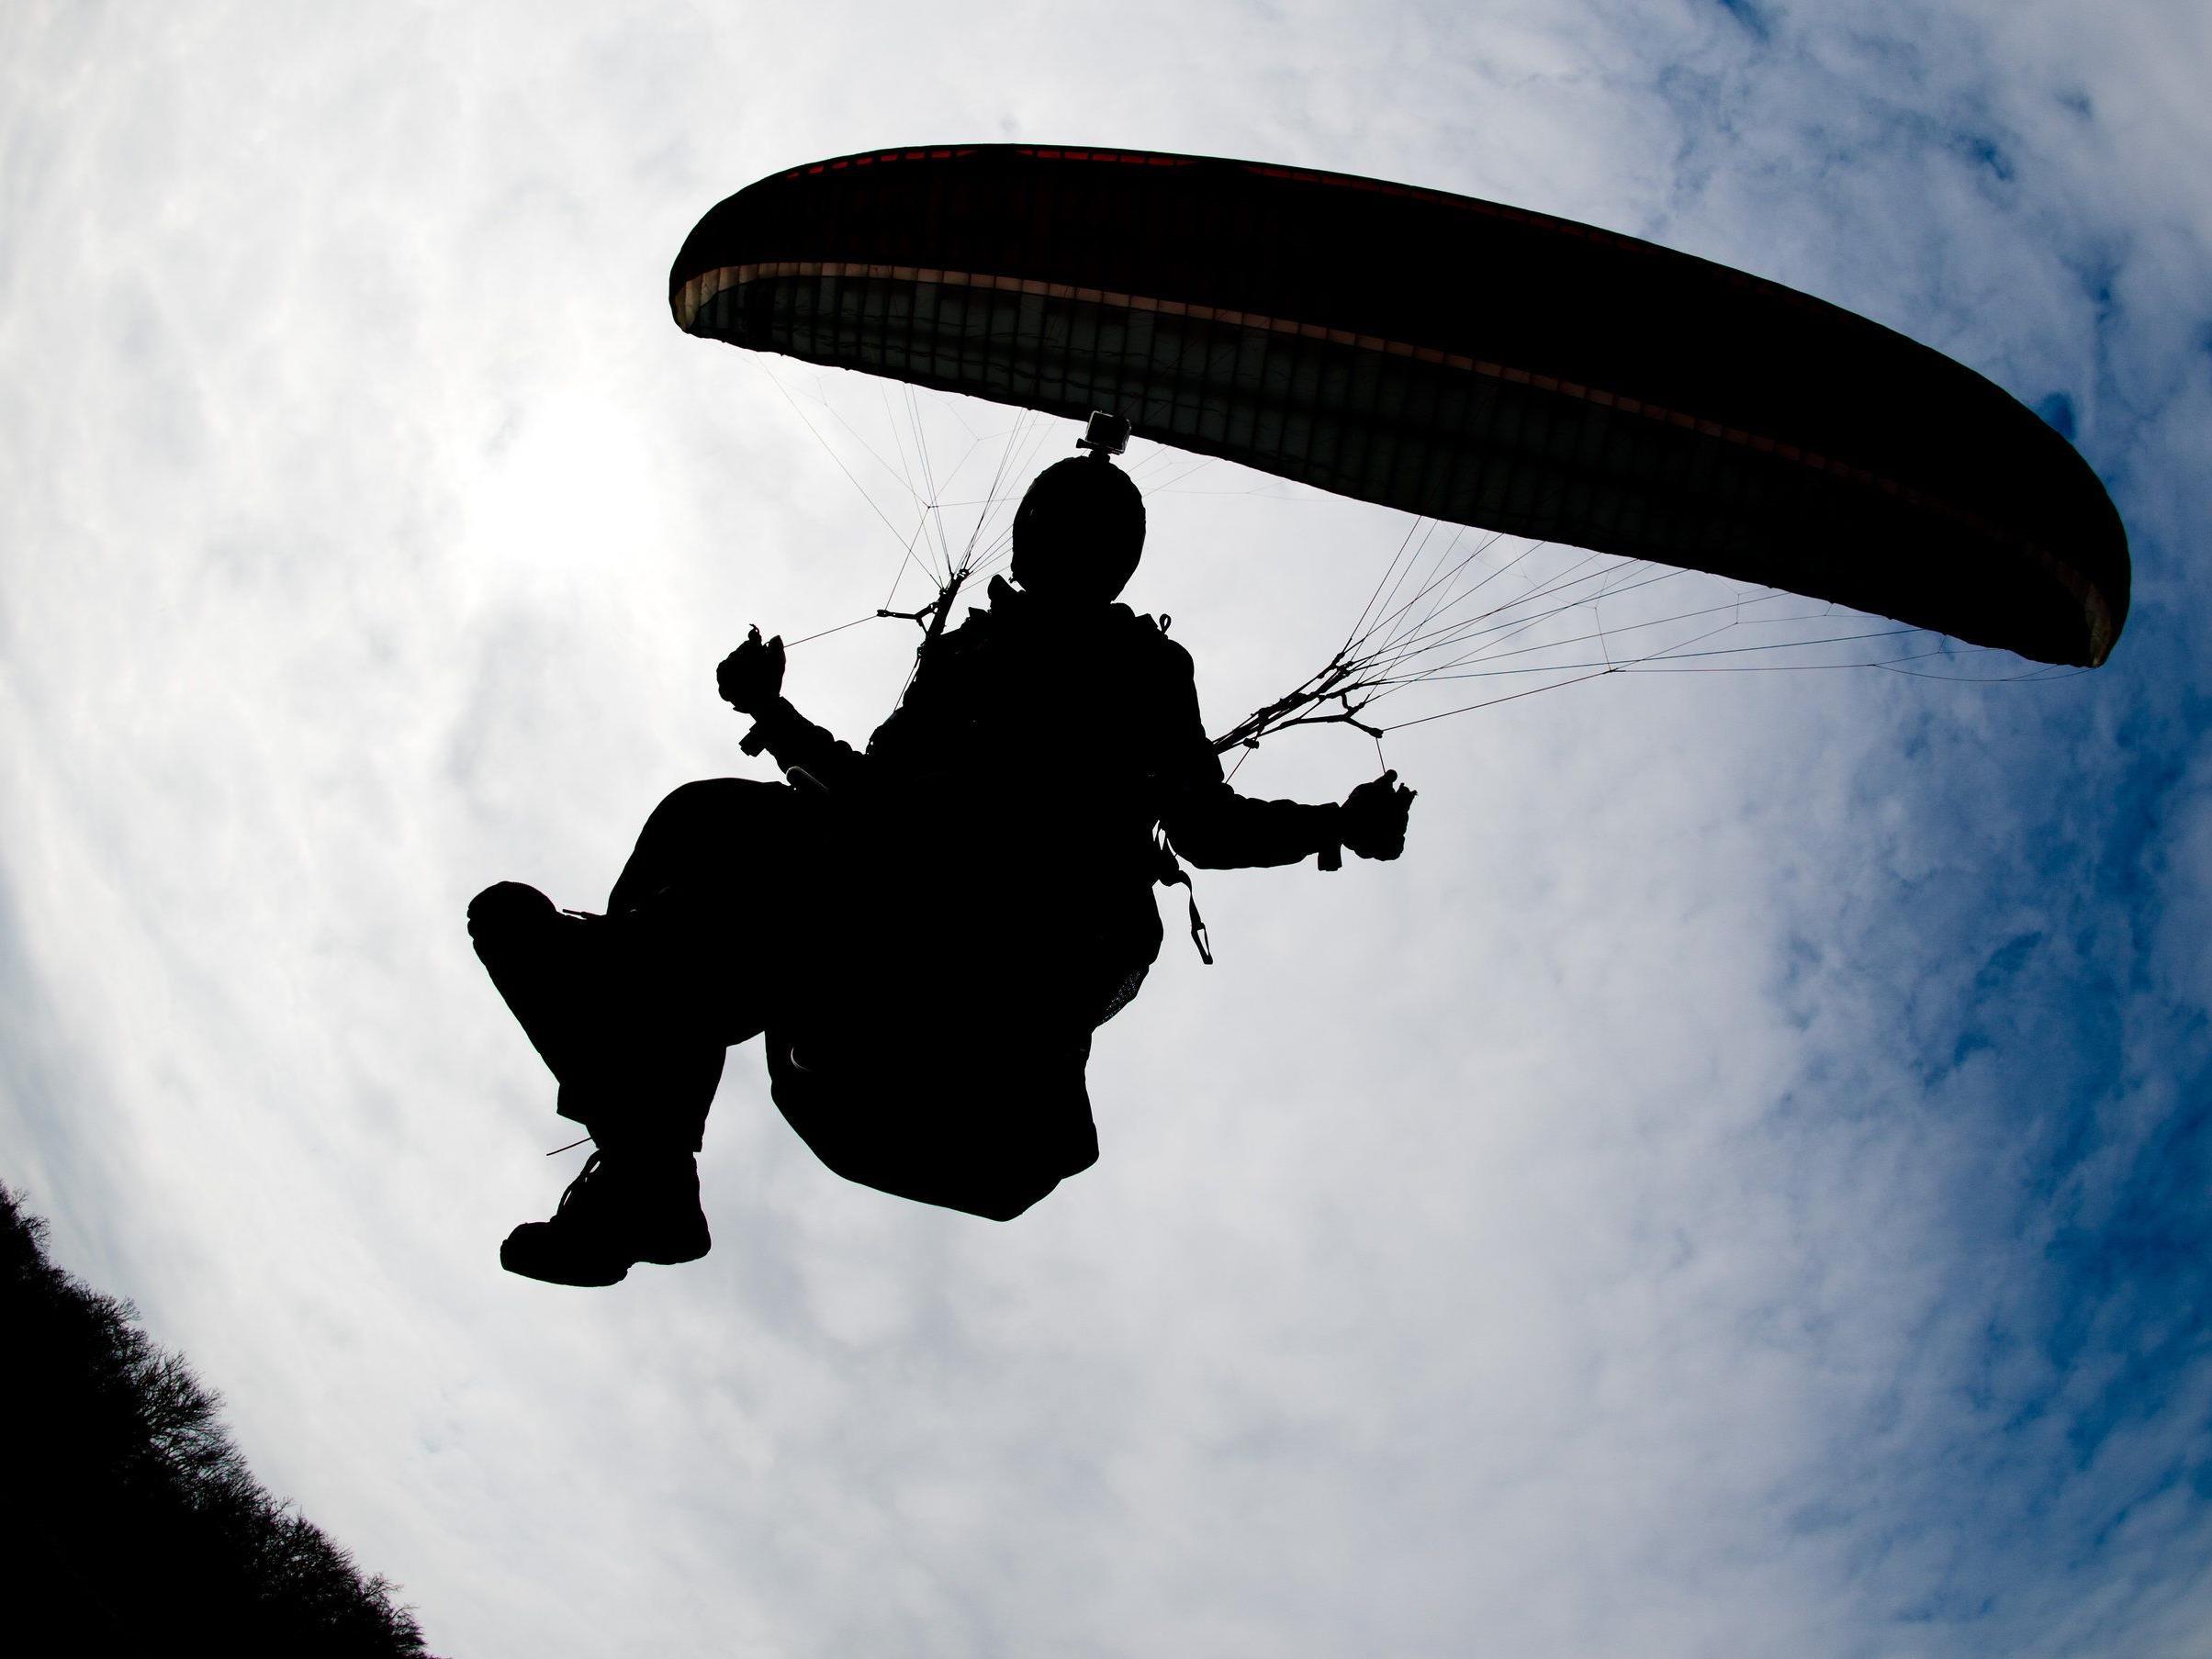 Osttirolerin überlebte bei Paragleiterflug 50-Meter-Absturz